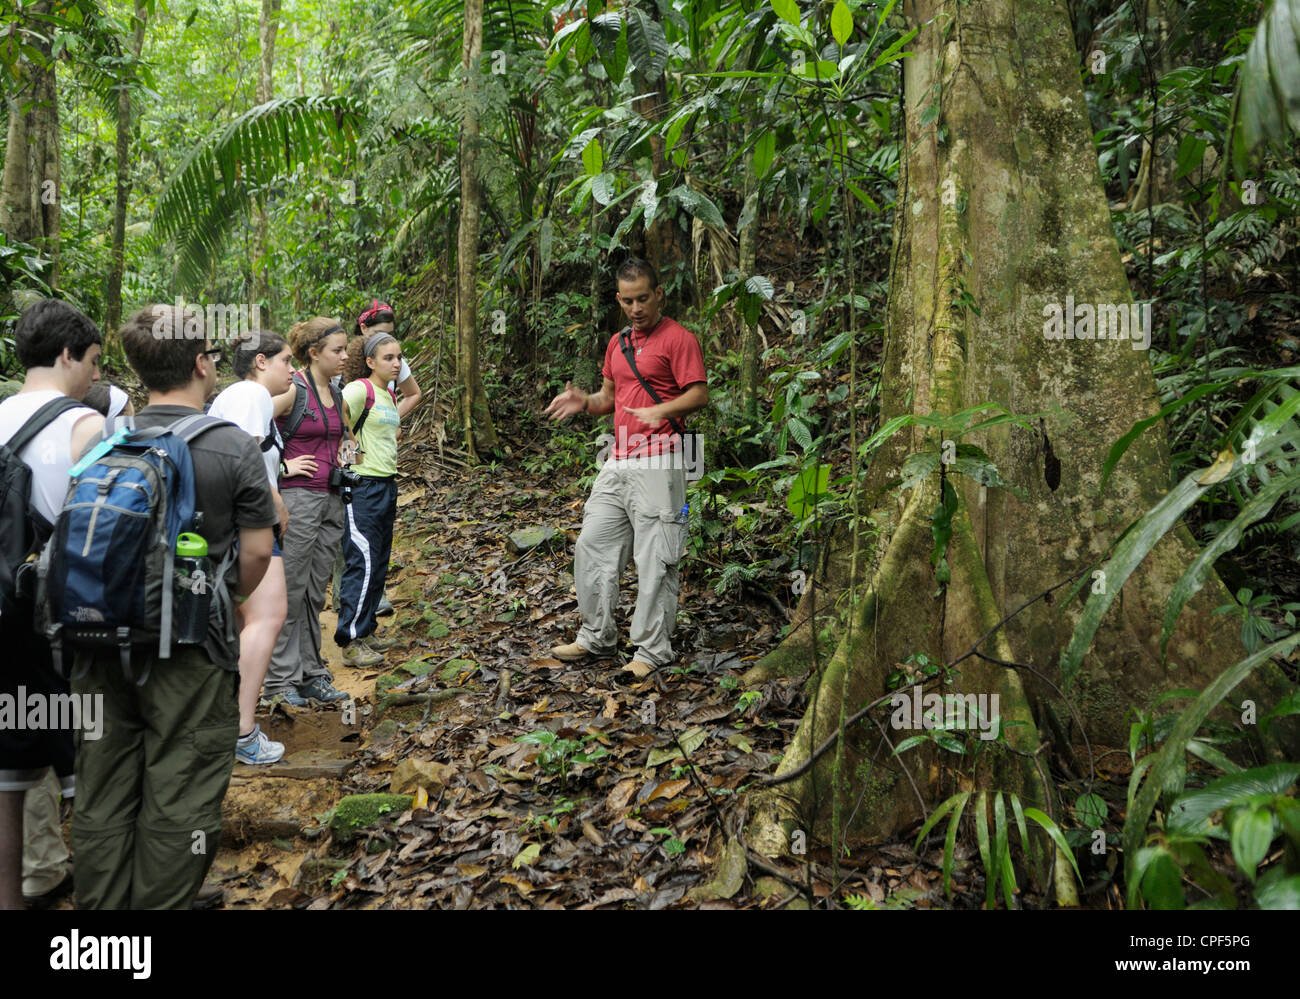 Gruppe von Jugendlichen Ökotouristen auf einem Regenwald Ökologie Spaziergang, Selva Verde, Costa Rica. Ihr Führer ist ein Costa-ricanischer Naturforscher Stockfoto